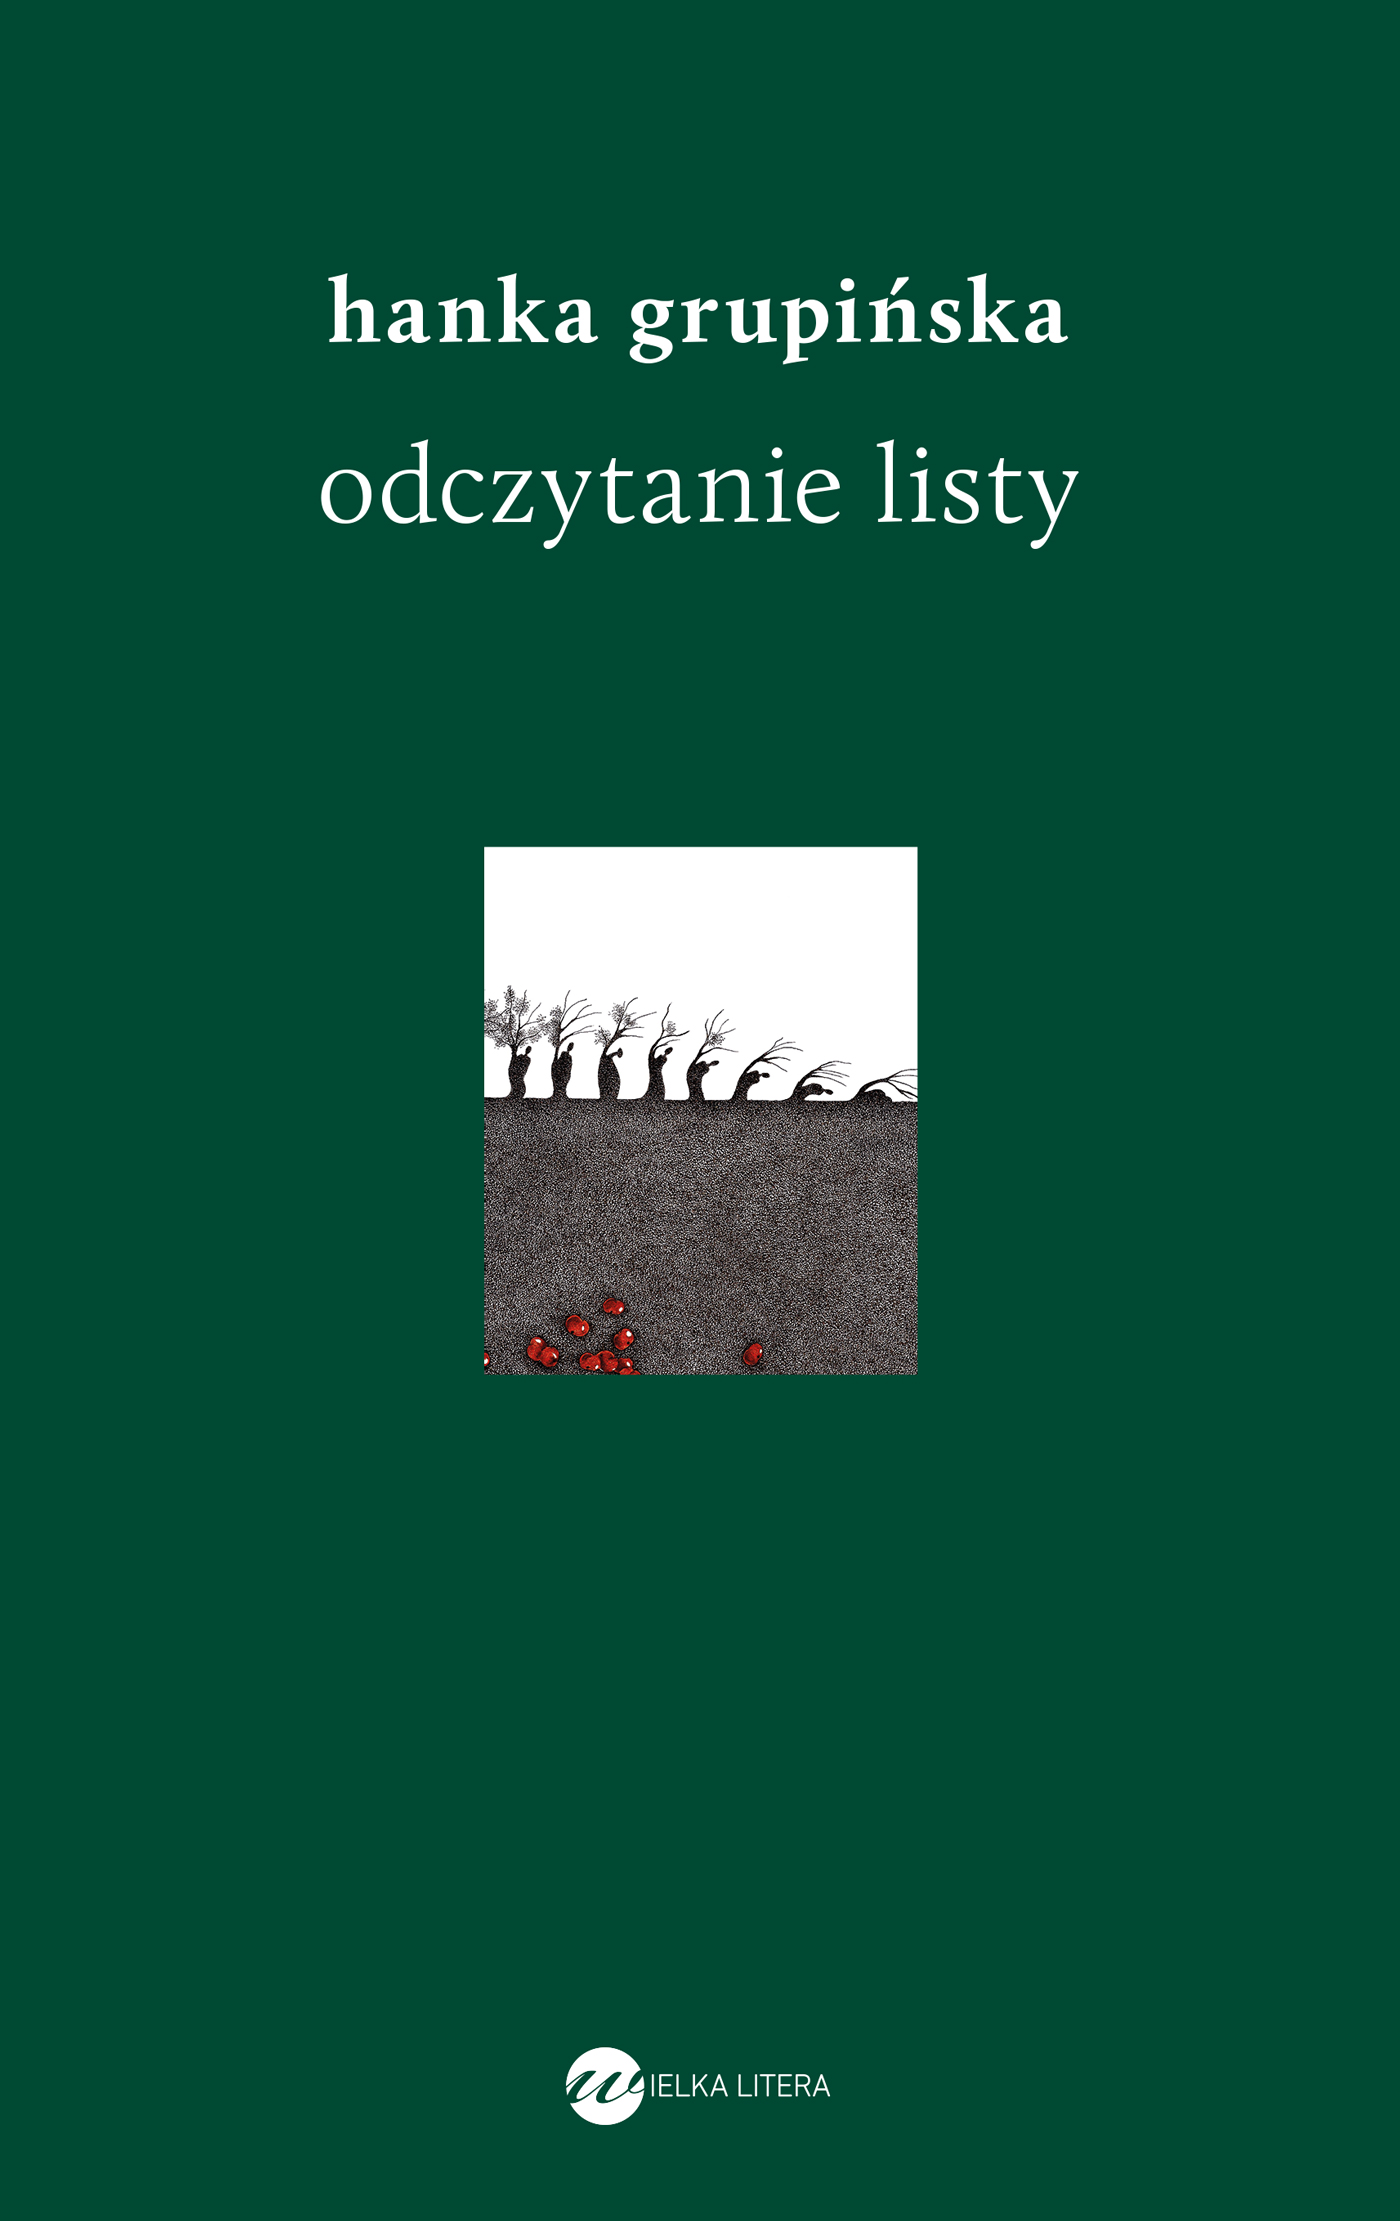 Okładka książki "Odczytanie listy" Hanki Grupińskiej. Prawie cała w ciemnozielonym kolorze - na środku mały obrazek o symbolicznym znaczeniu.